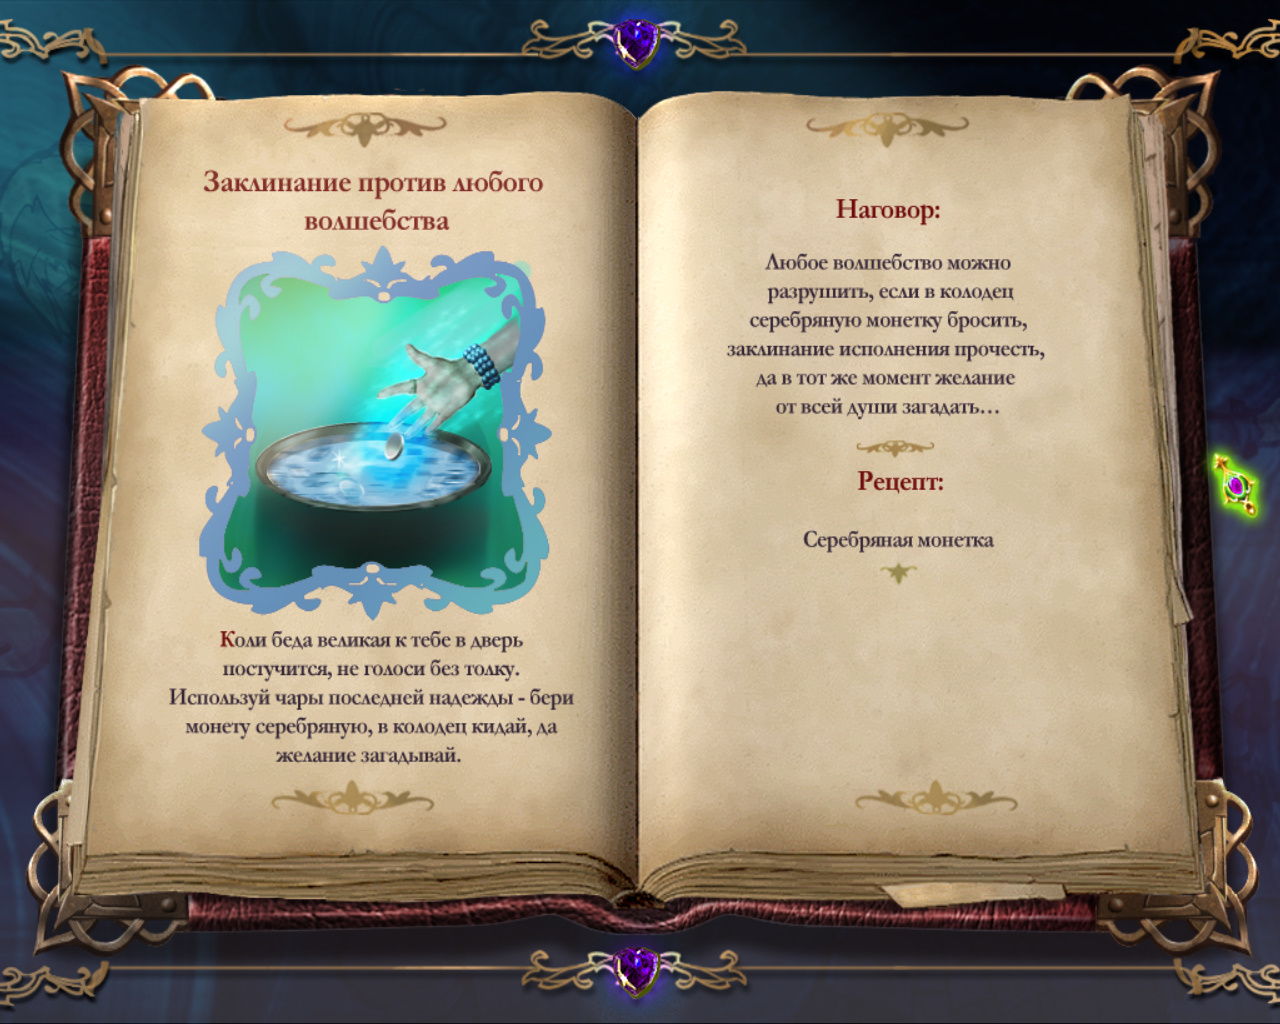 игра Книга мастеров - рецепт заклинания против любого волшебства